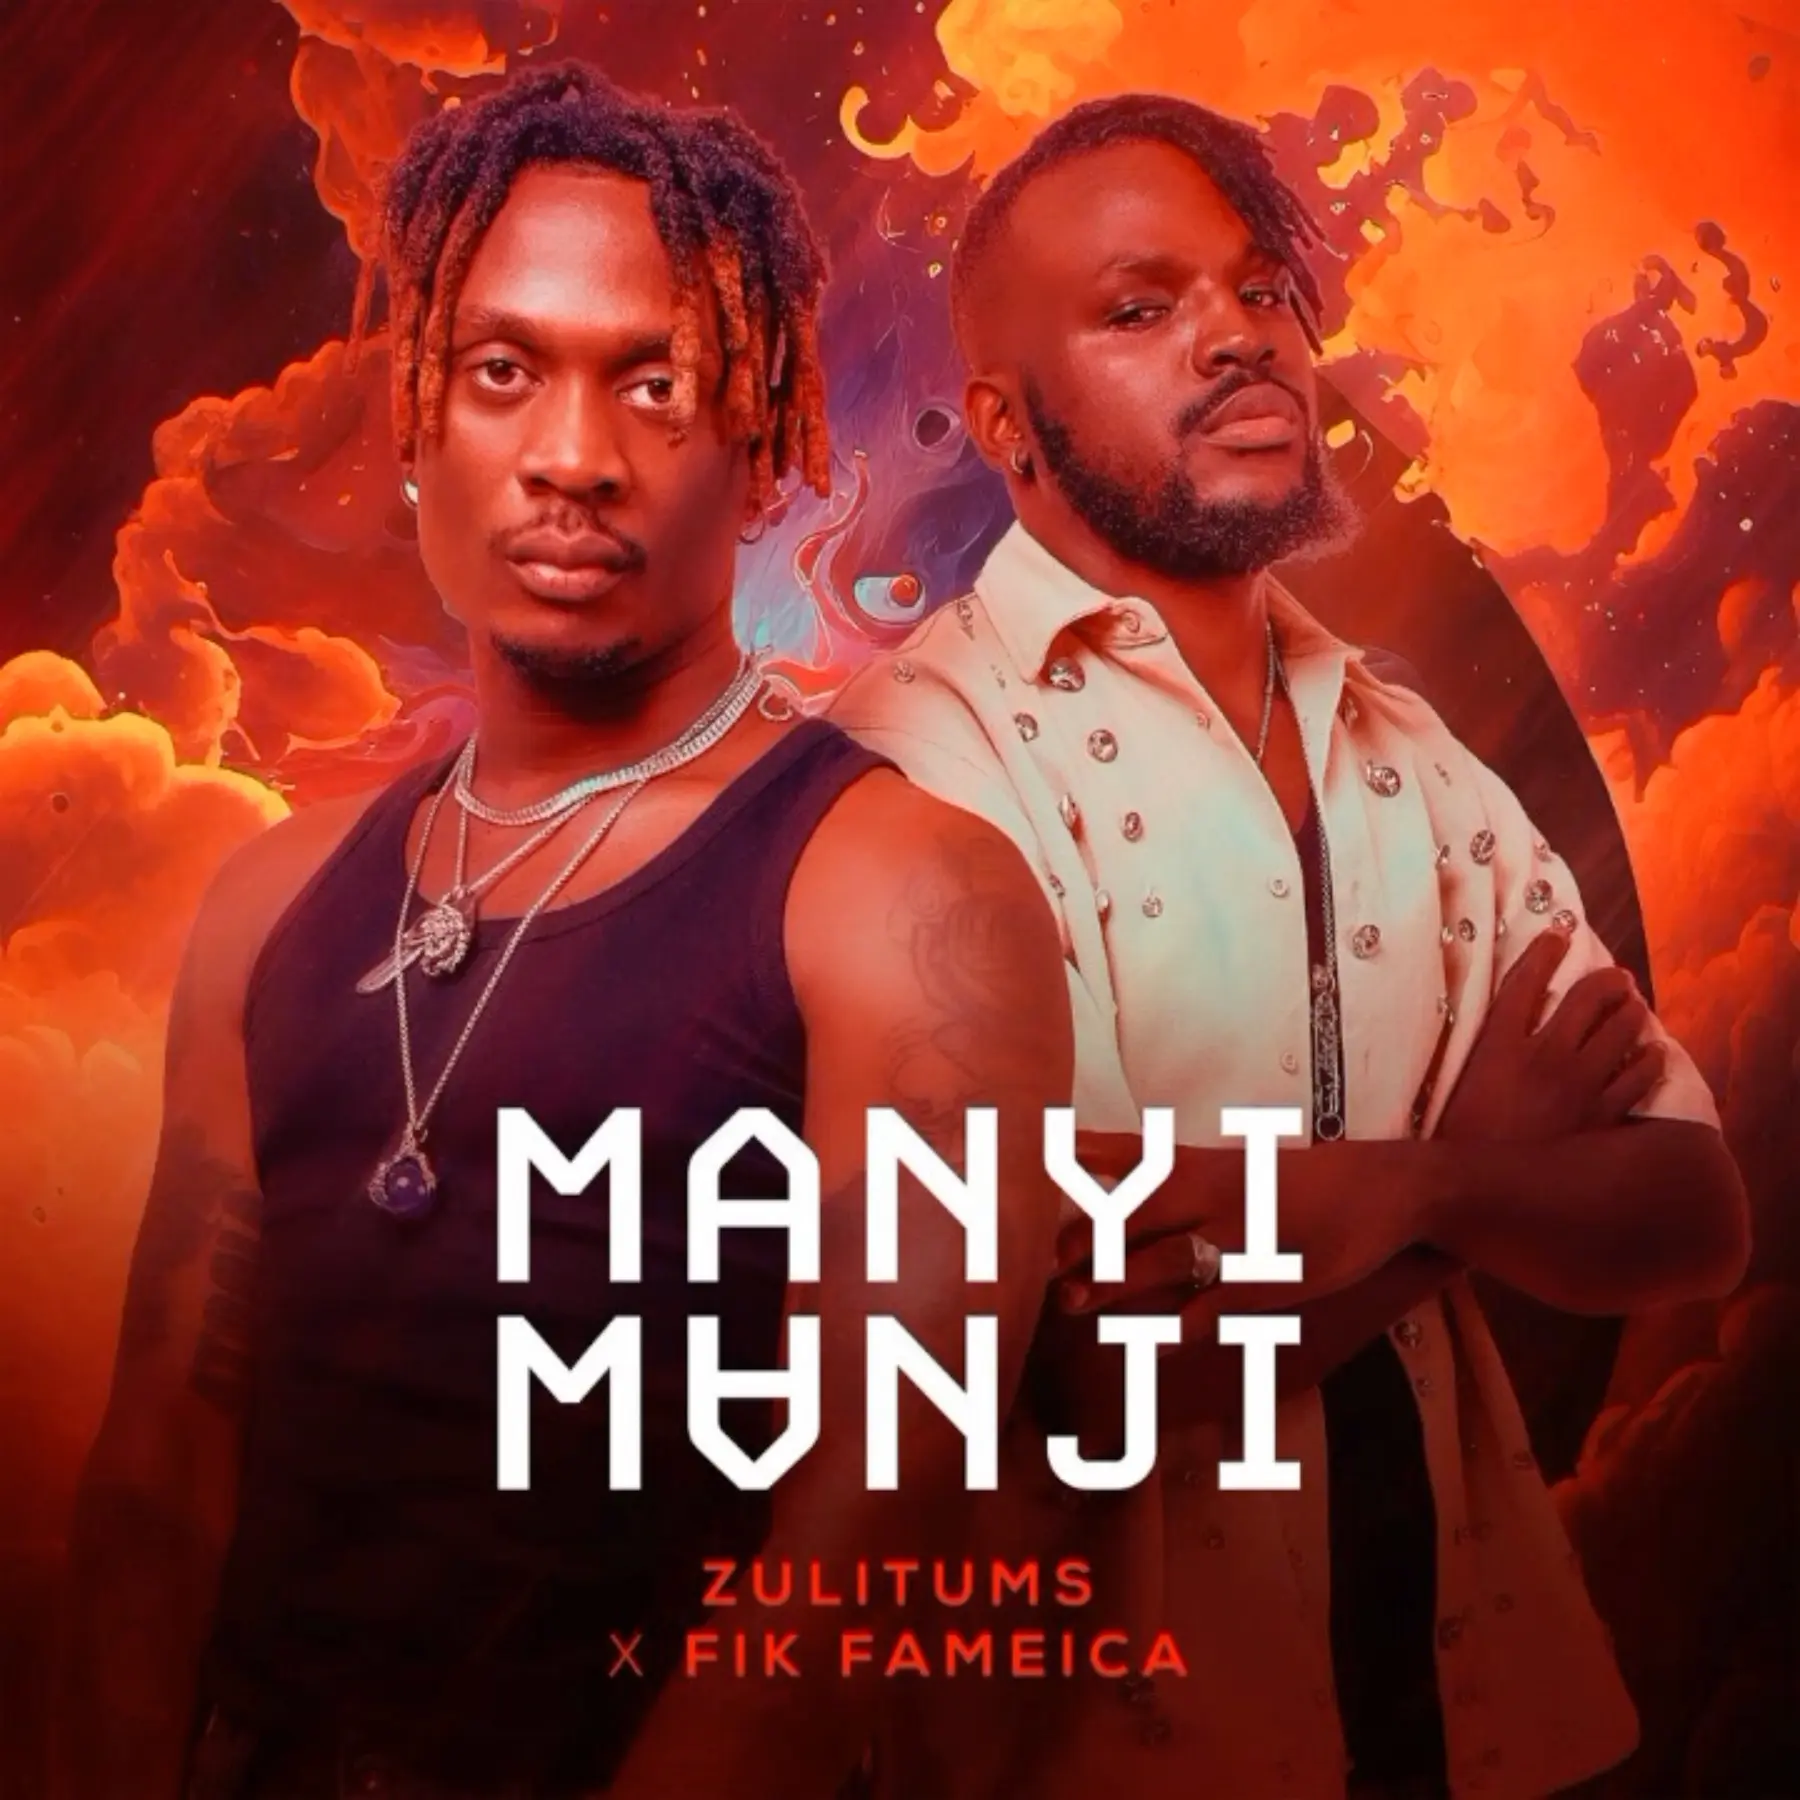 fik-fameica-manyi-mangi-album-cover